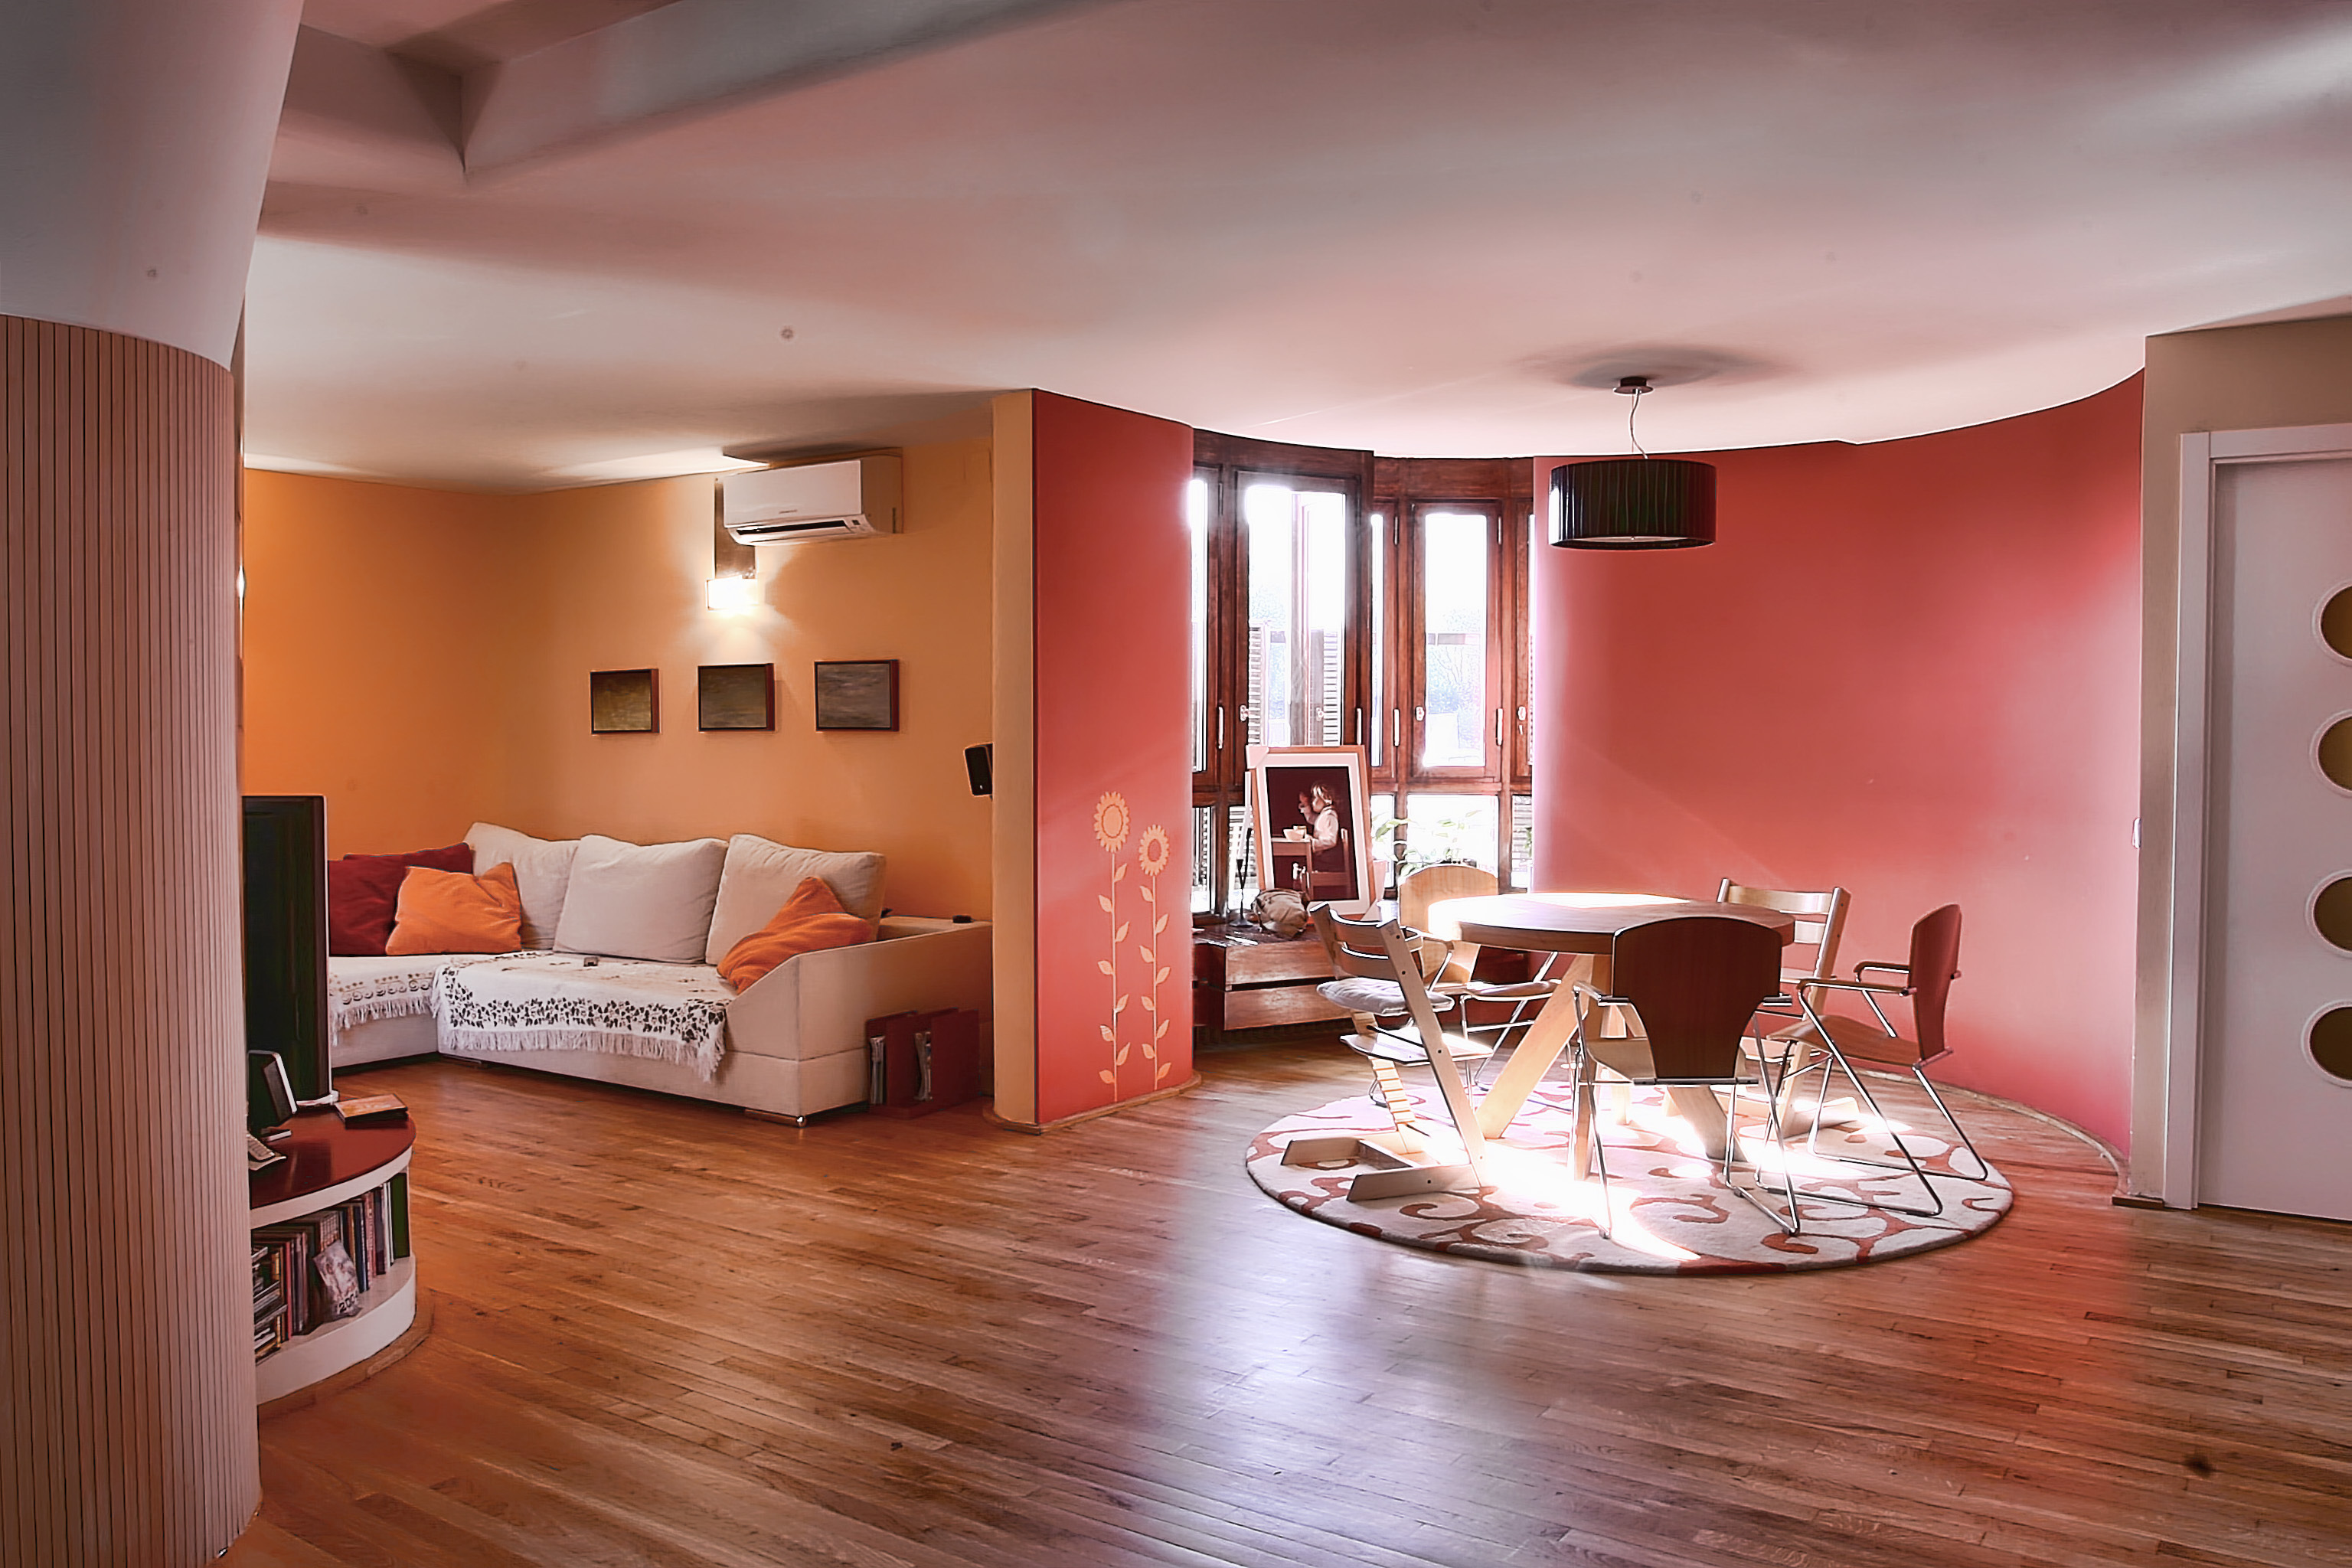 Комната это жилое помещение. Красивая квартира. Интерьер жилой комнаты. Персиковый цвет стен в интерьере. Дизайн квартиры.